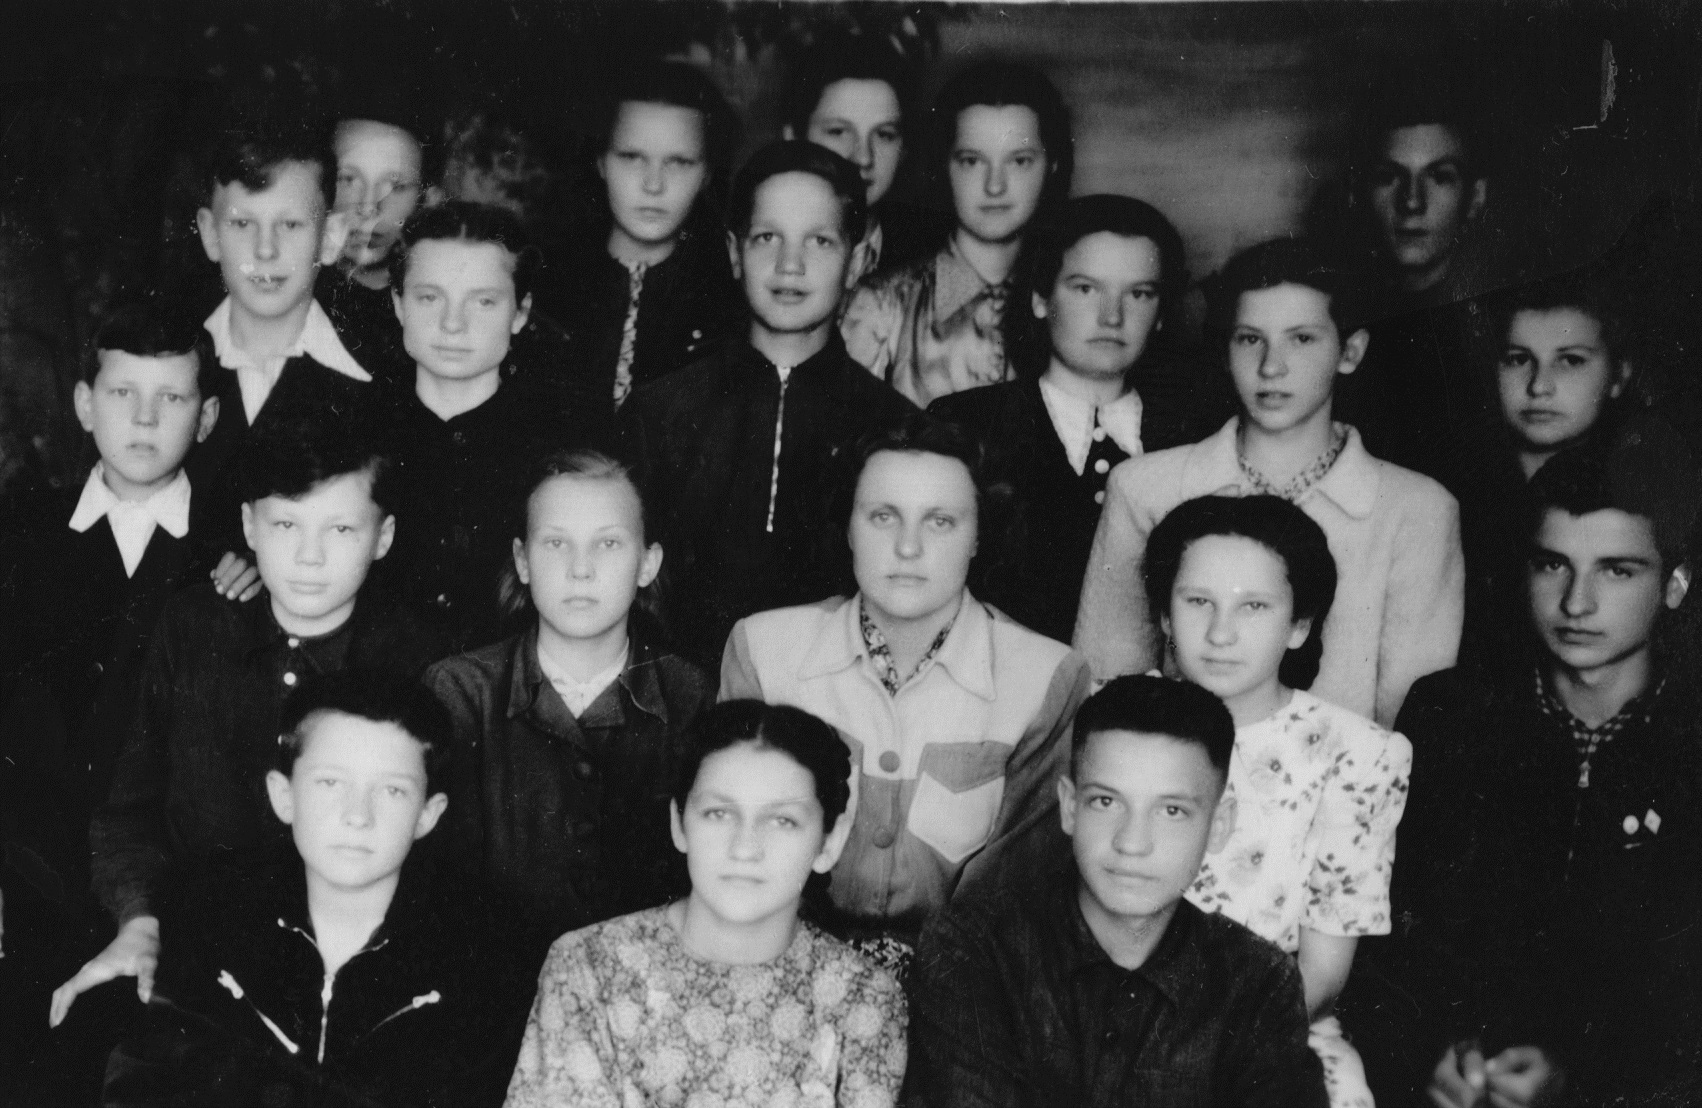 Subačiaus vidurinės mokyklos 6a klasės mokiniai su auklėtoja Zita Dambrauskaite, 1956 m. Romualdas Karazija – antroje eilėje pirmas iš kairės.